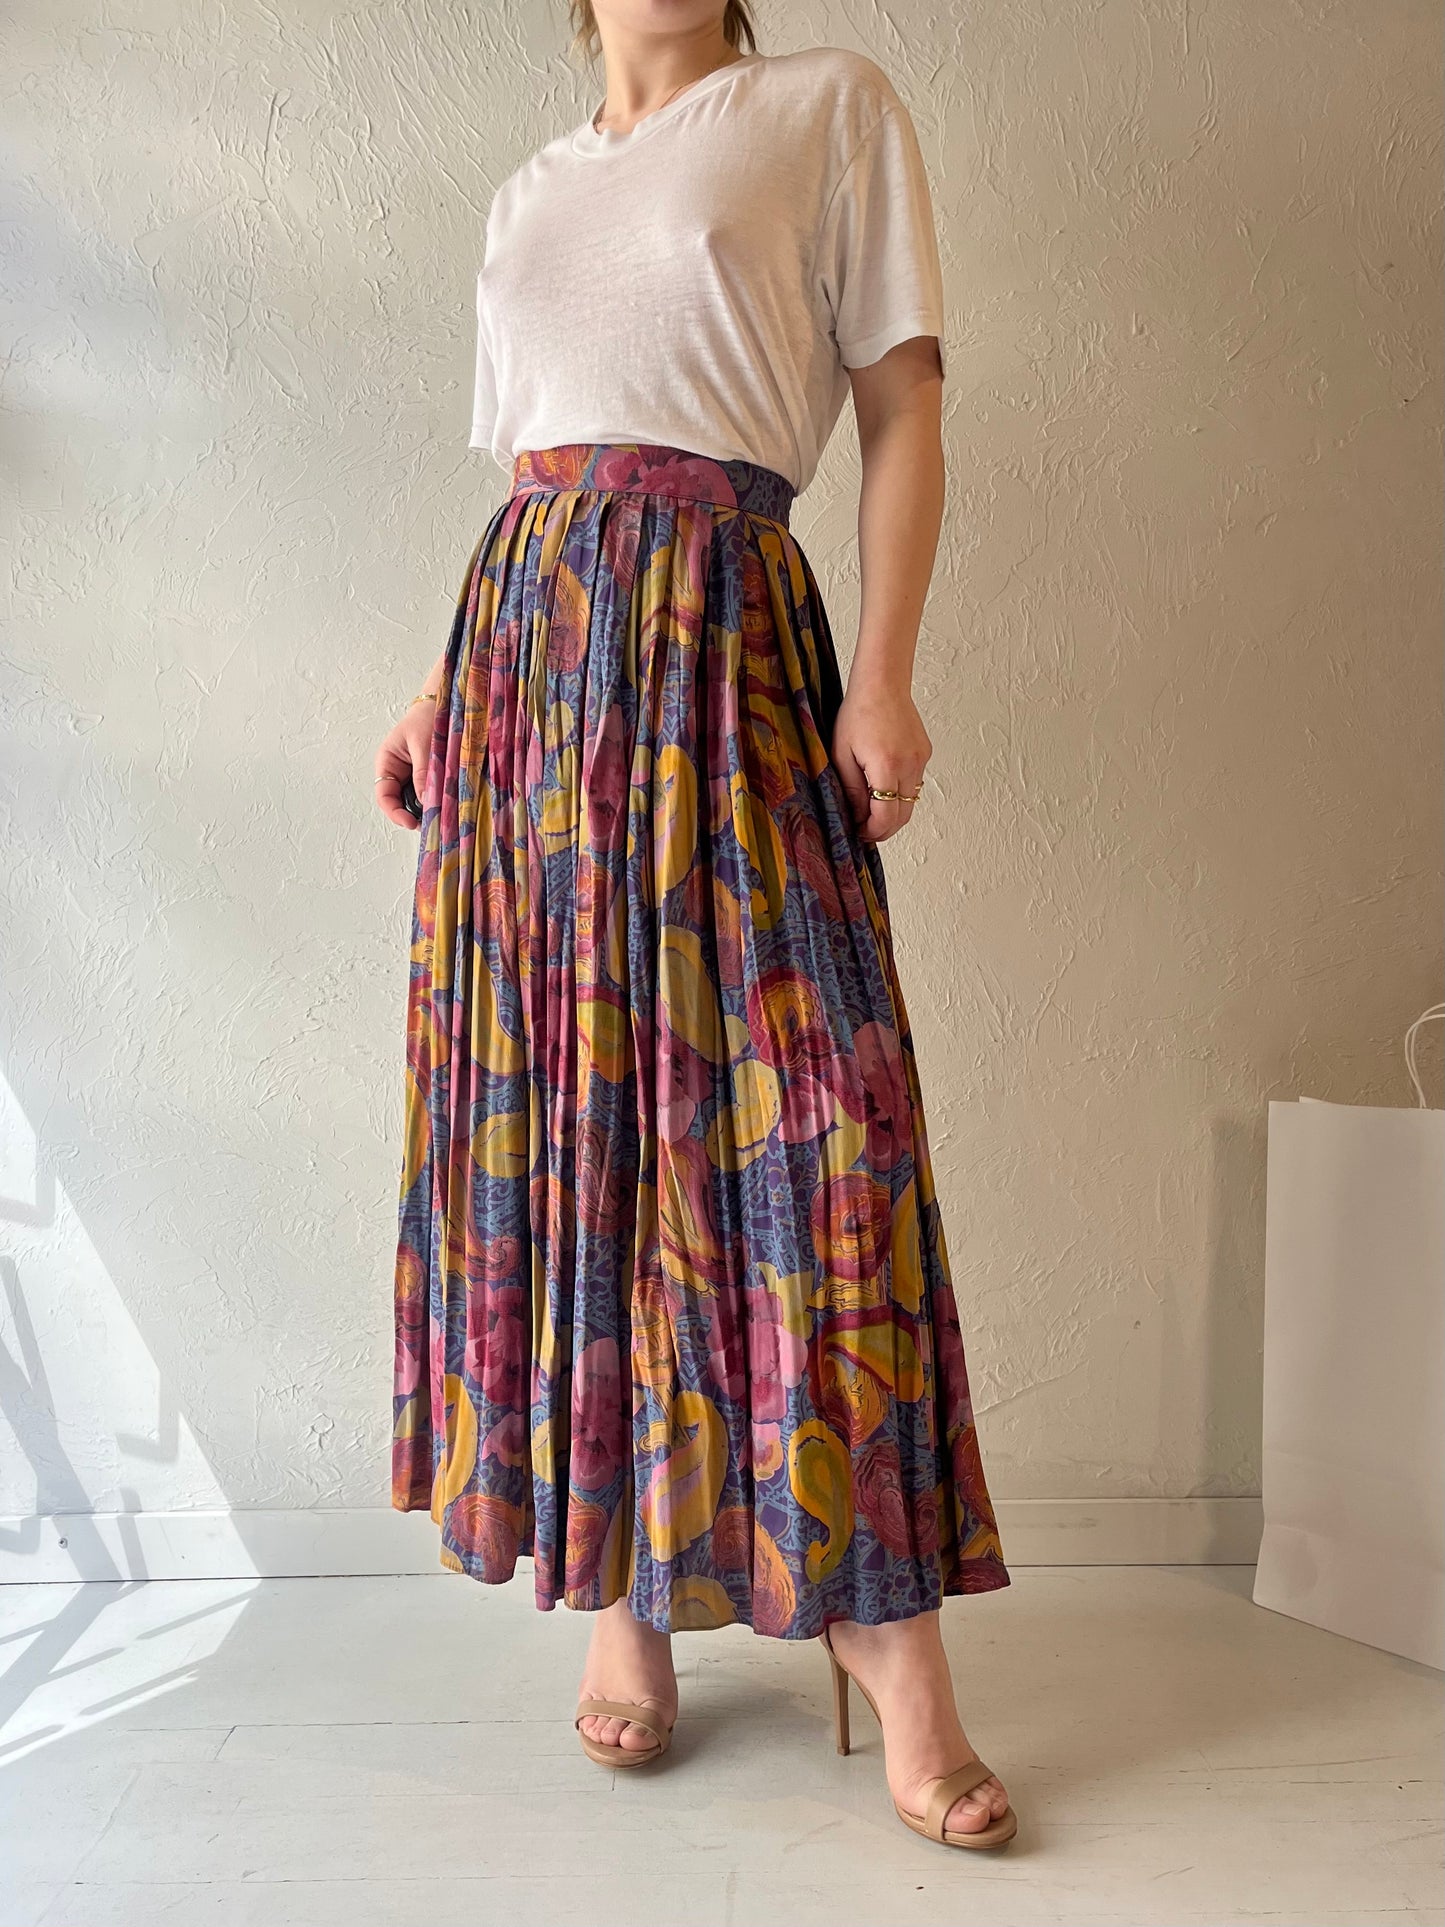 90s 'Regalia' Pleated Skirt / Small